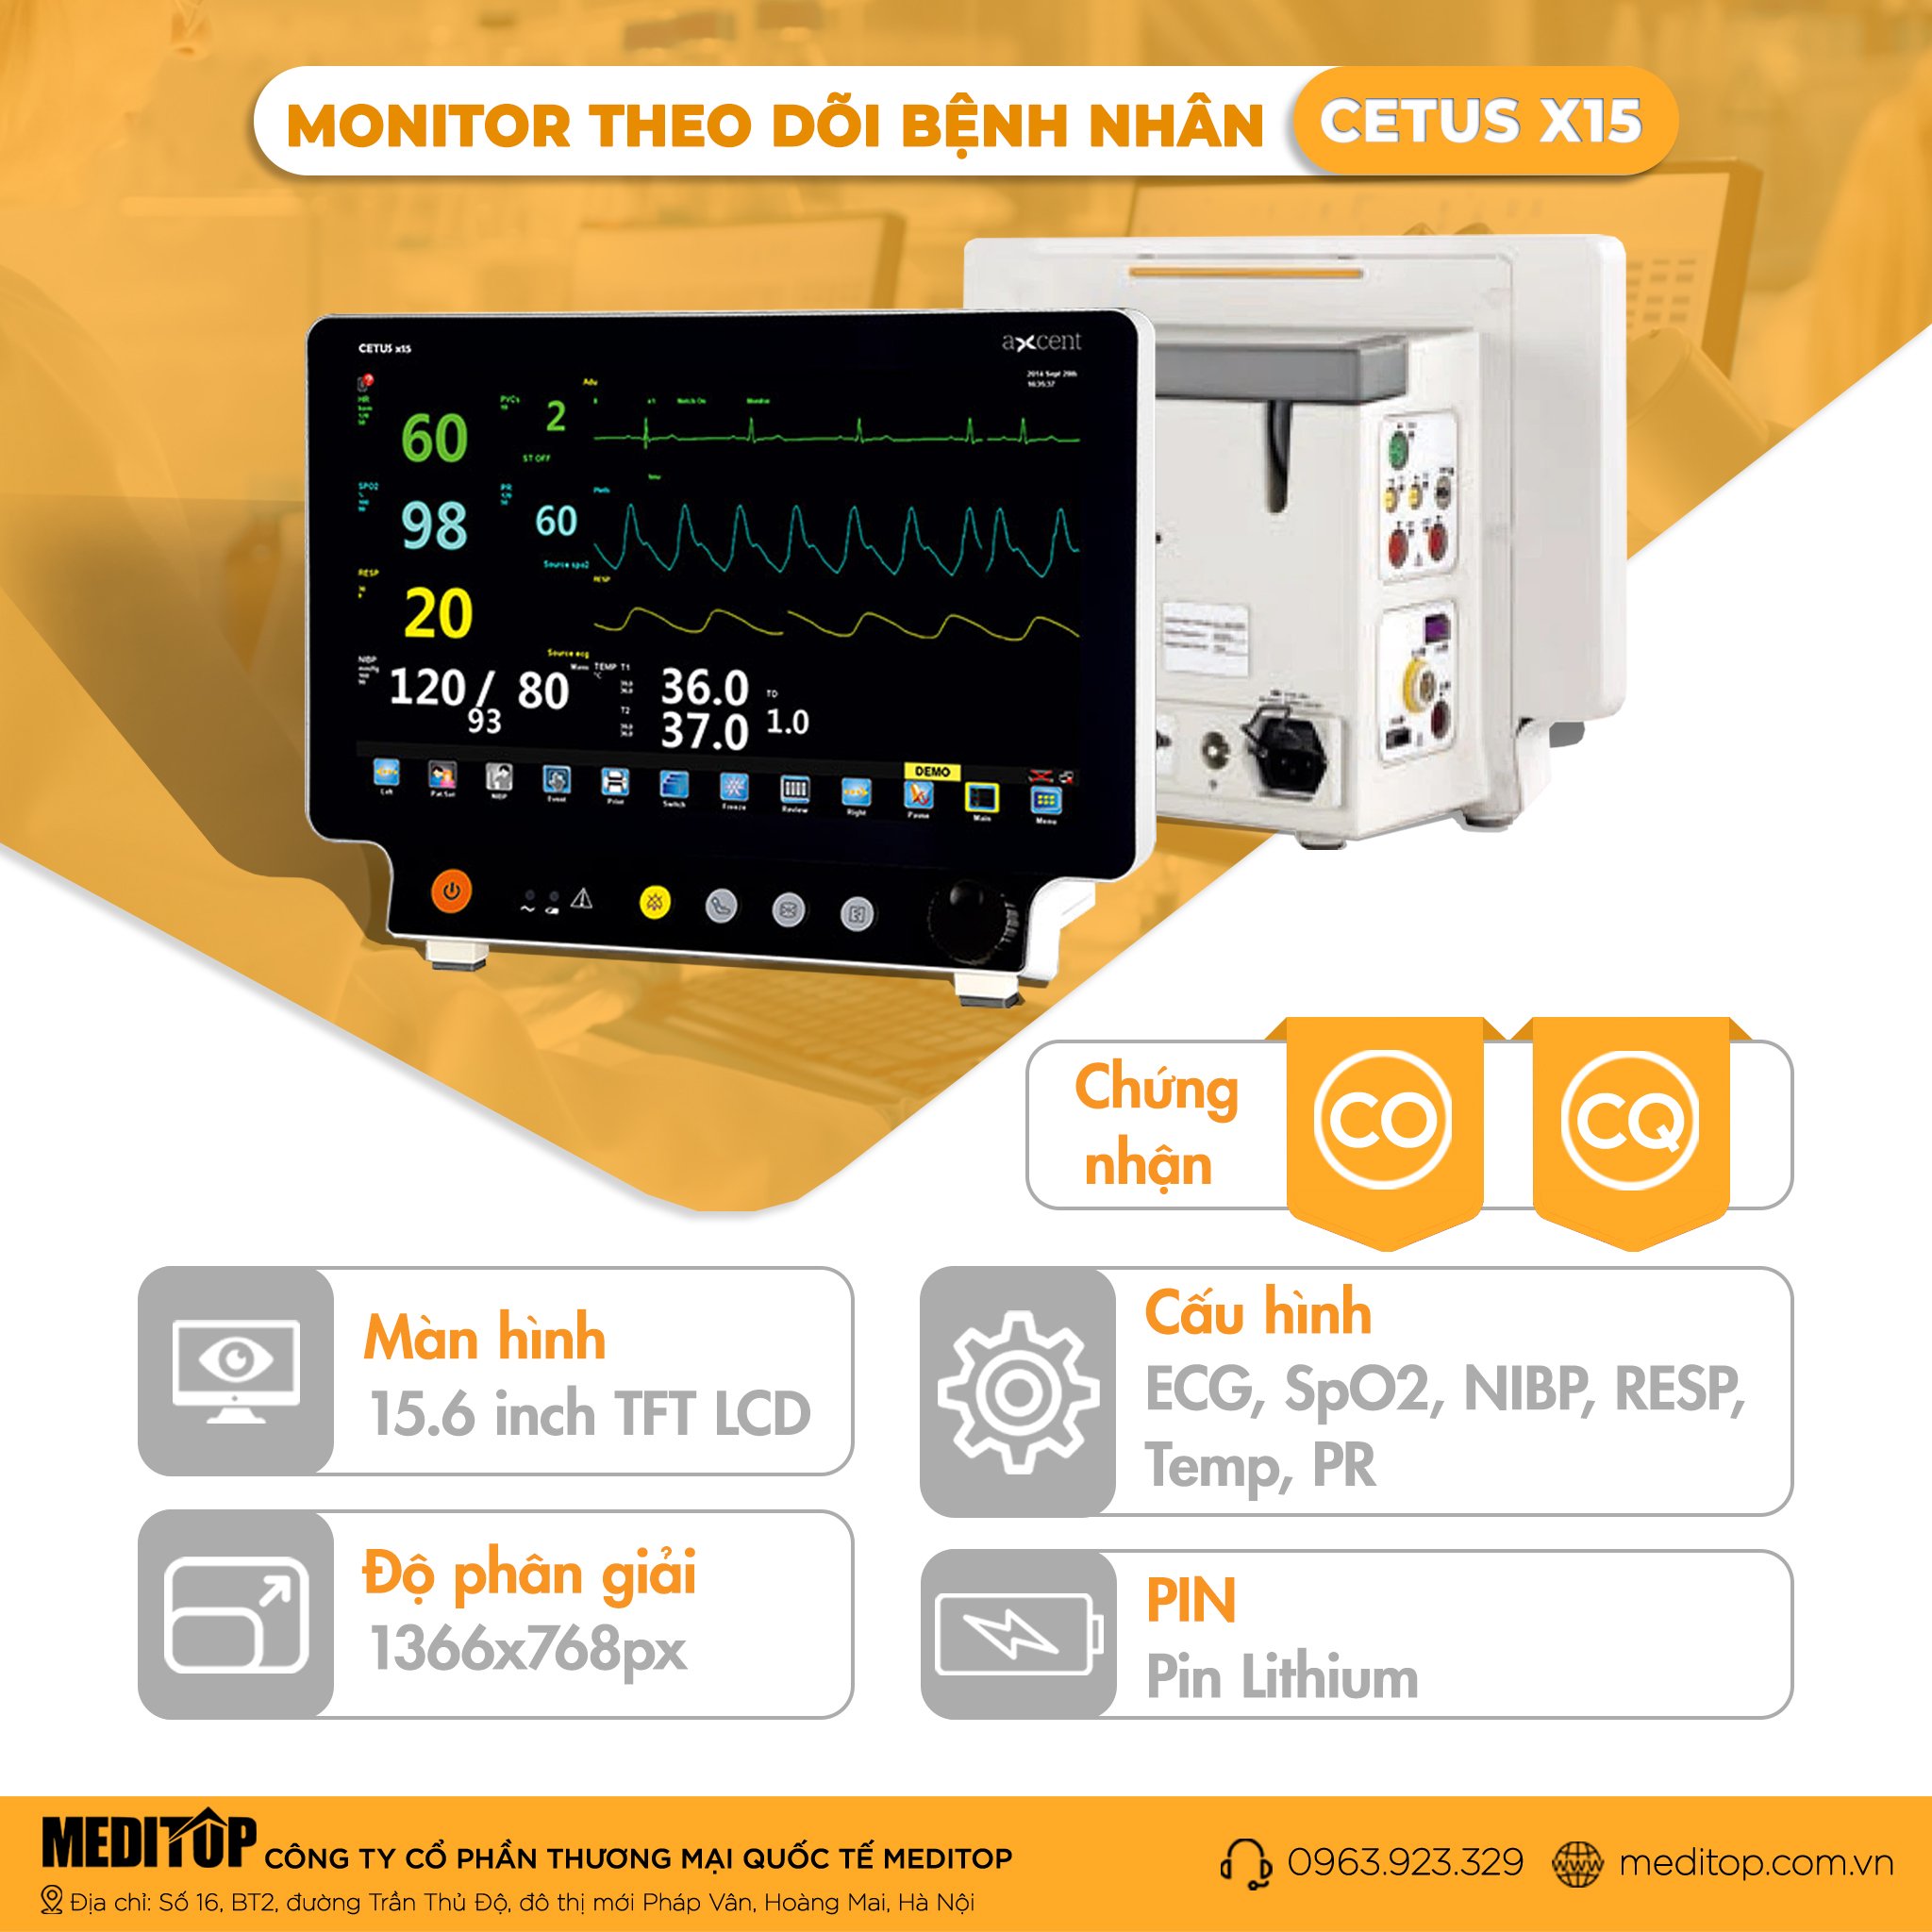 Monitor 6 thông số theo dõi bệnh nhân Cetus X15, Đức